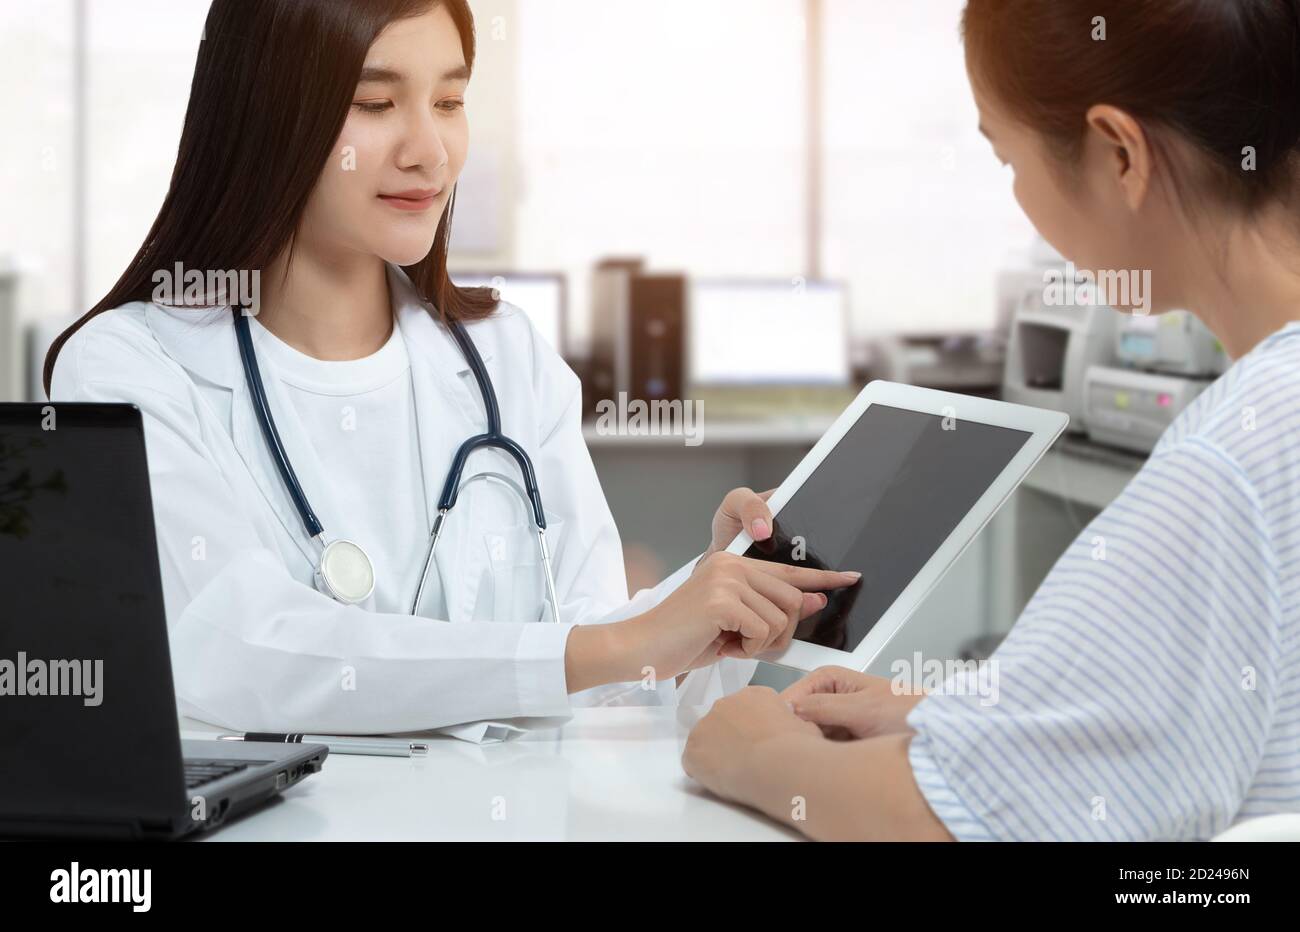 Asiatische Frau Arzt hält Tablette mit isolierten leeren Bildschirm, während die Beratung Patient in der medizinischen Beratungsraum. Stockfoto